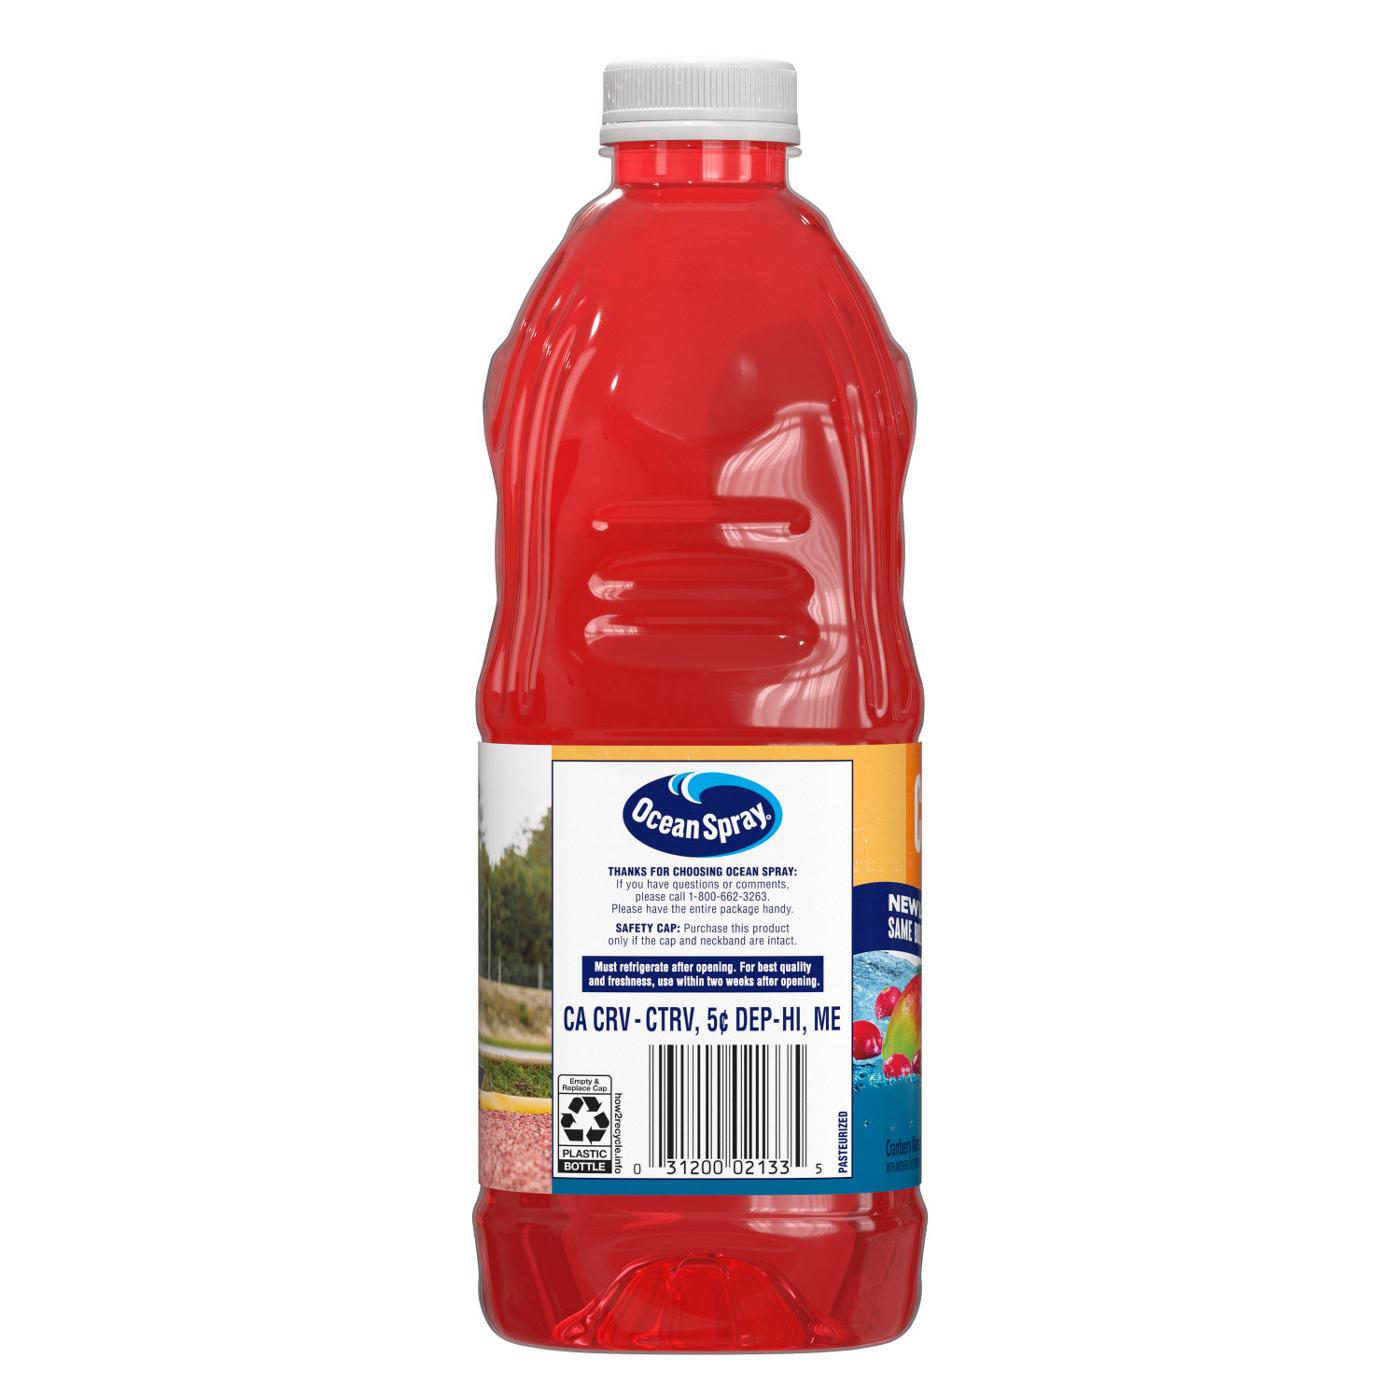 Ocean Spray Cran-Mango Juice Drink; image 6 of 6